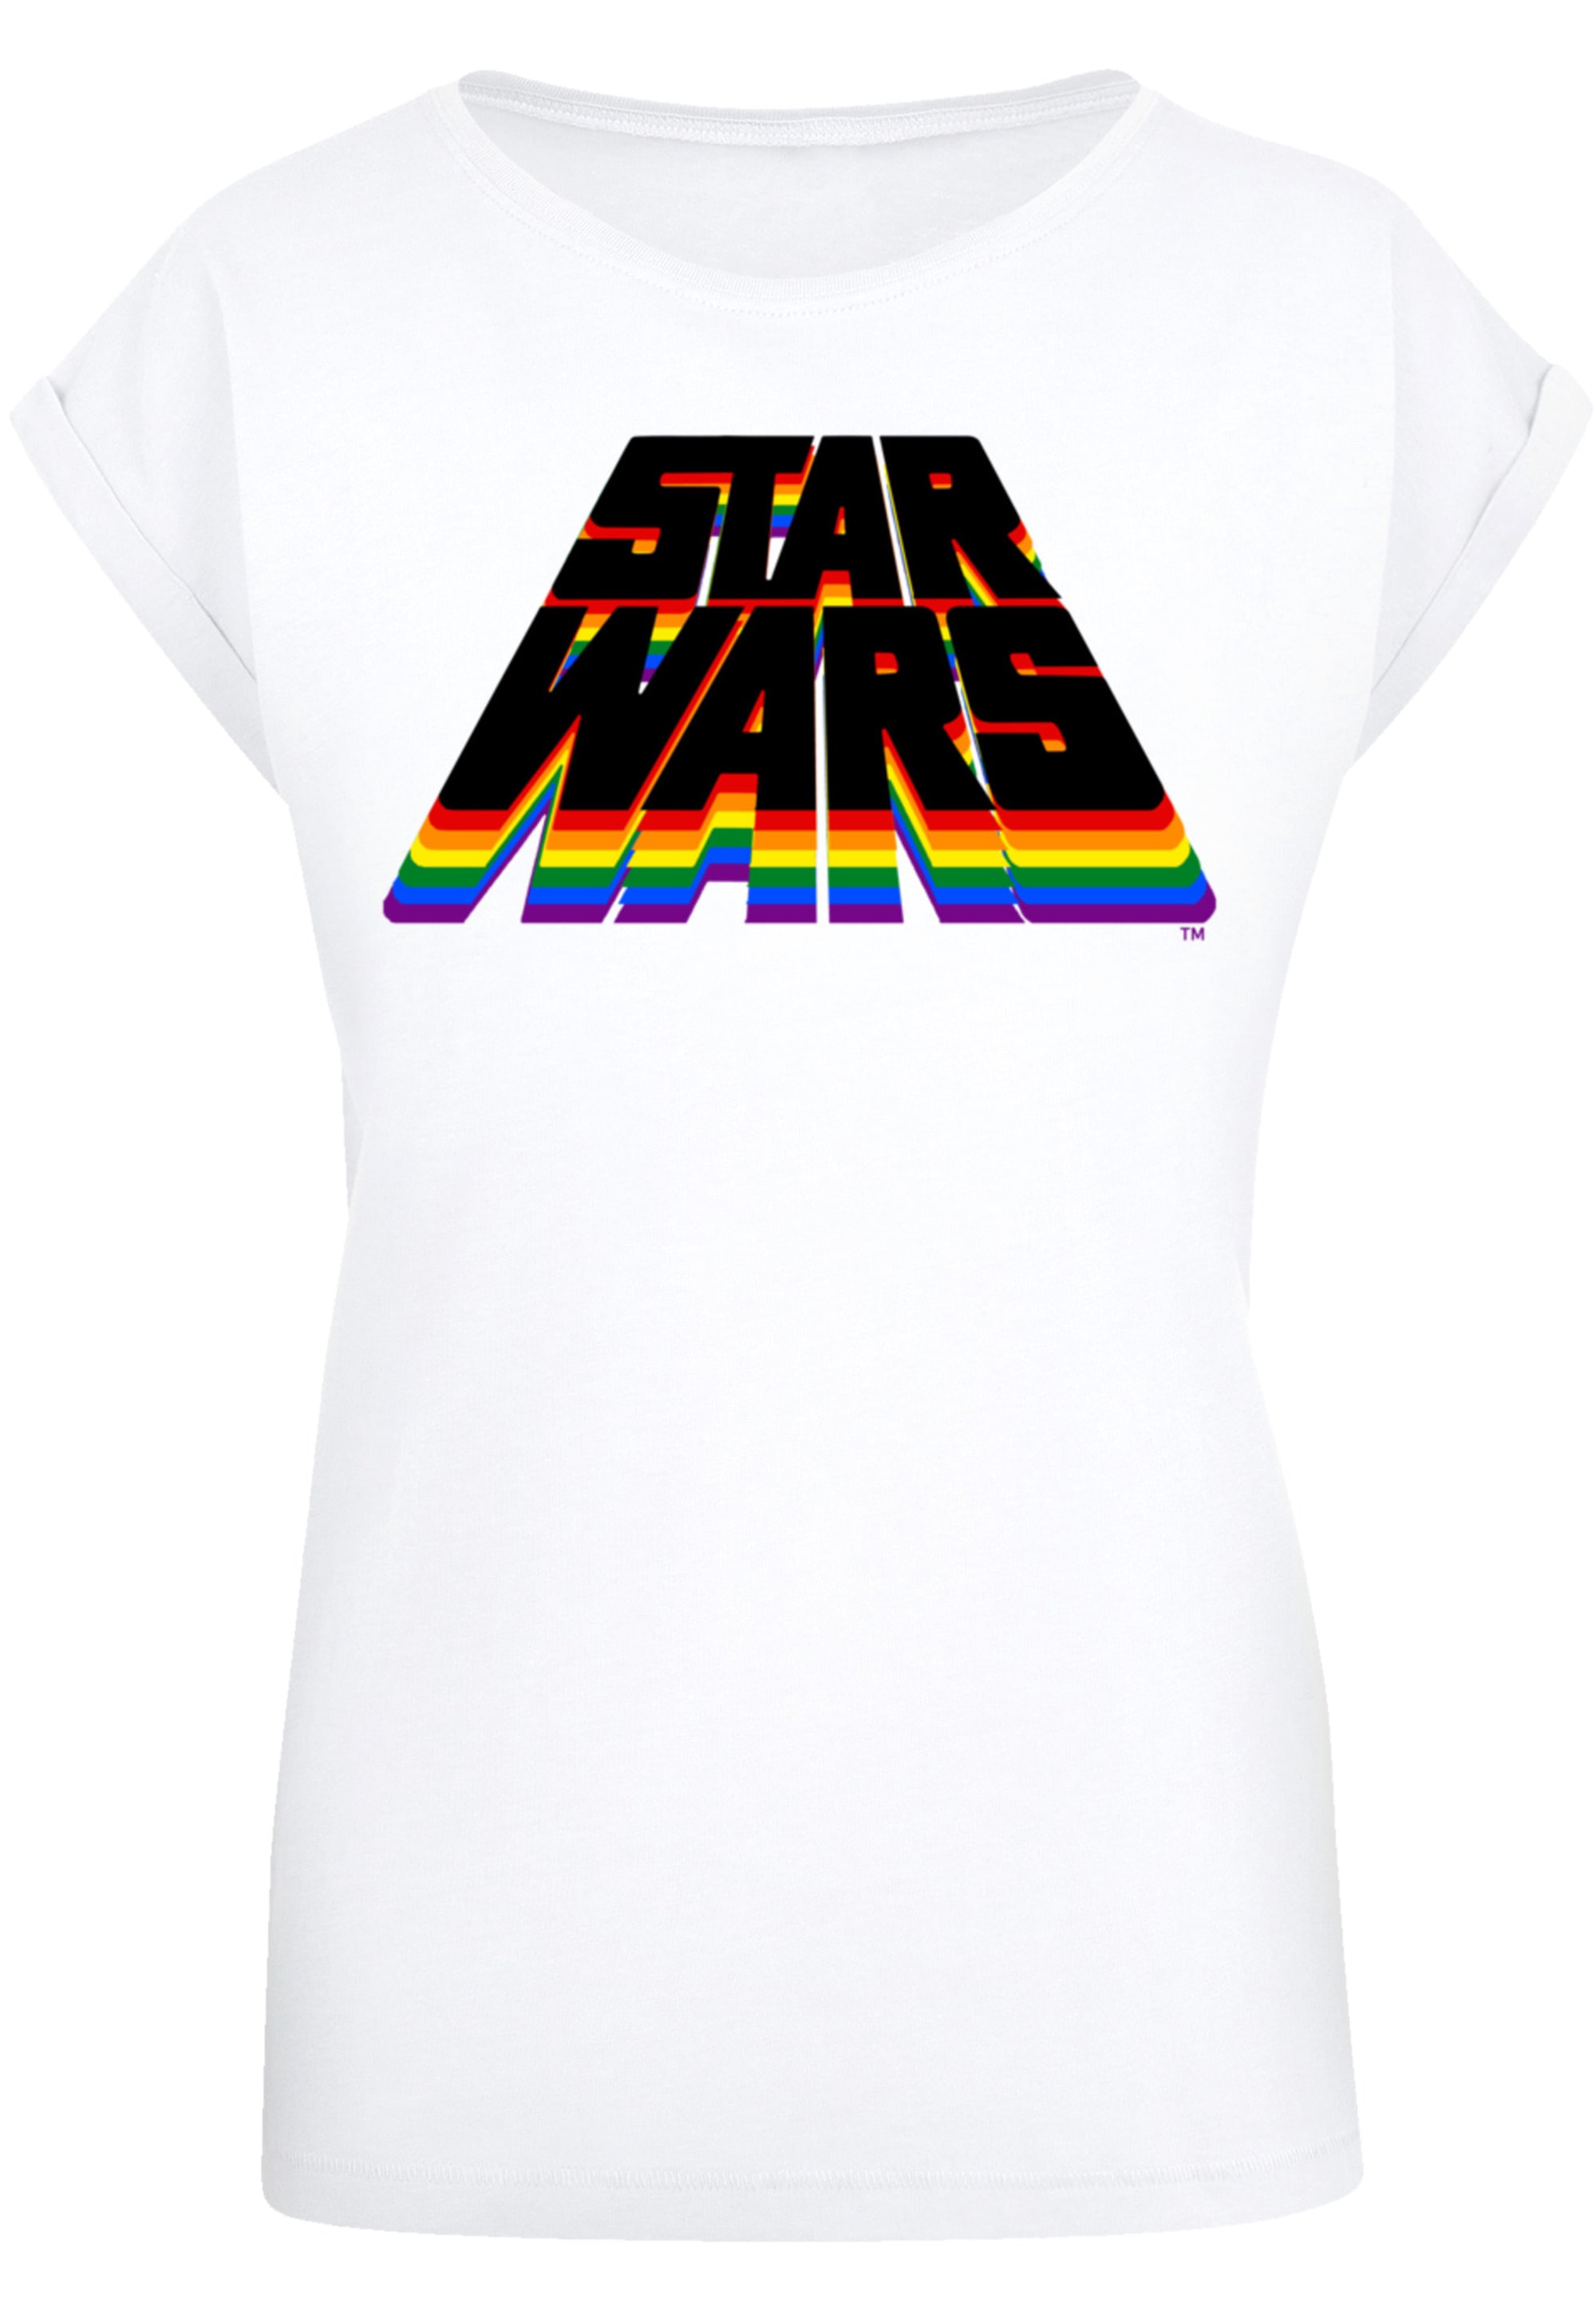 online Qualität BAUR Wars Pride«, T-Shirt Vintage F4NT4STIC »Star Premium kaufen |